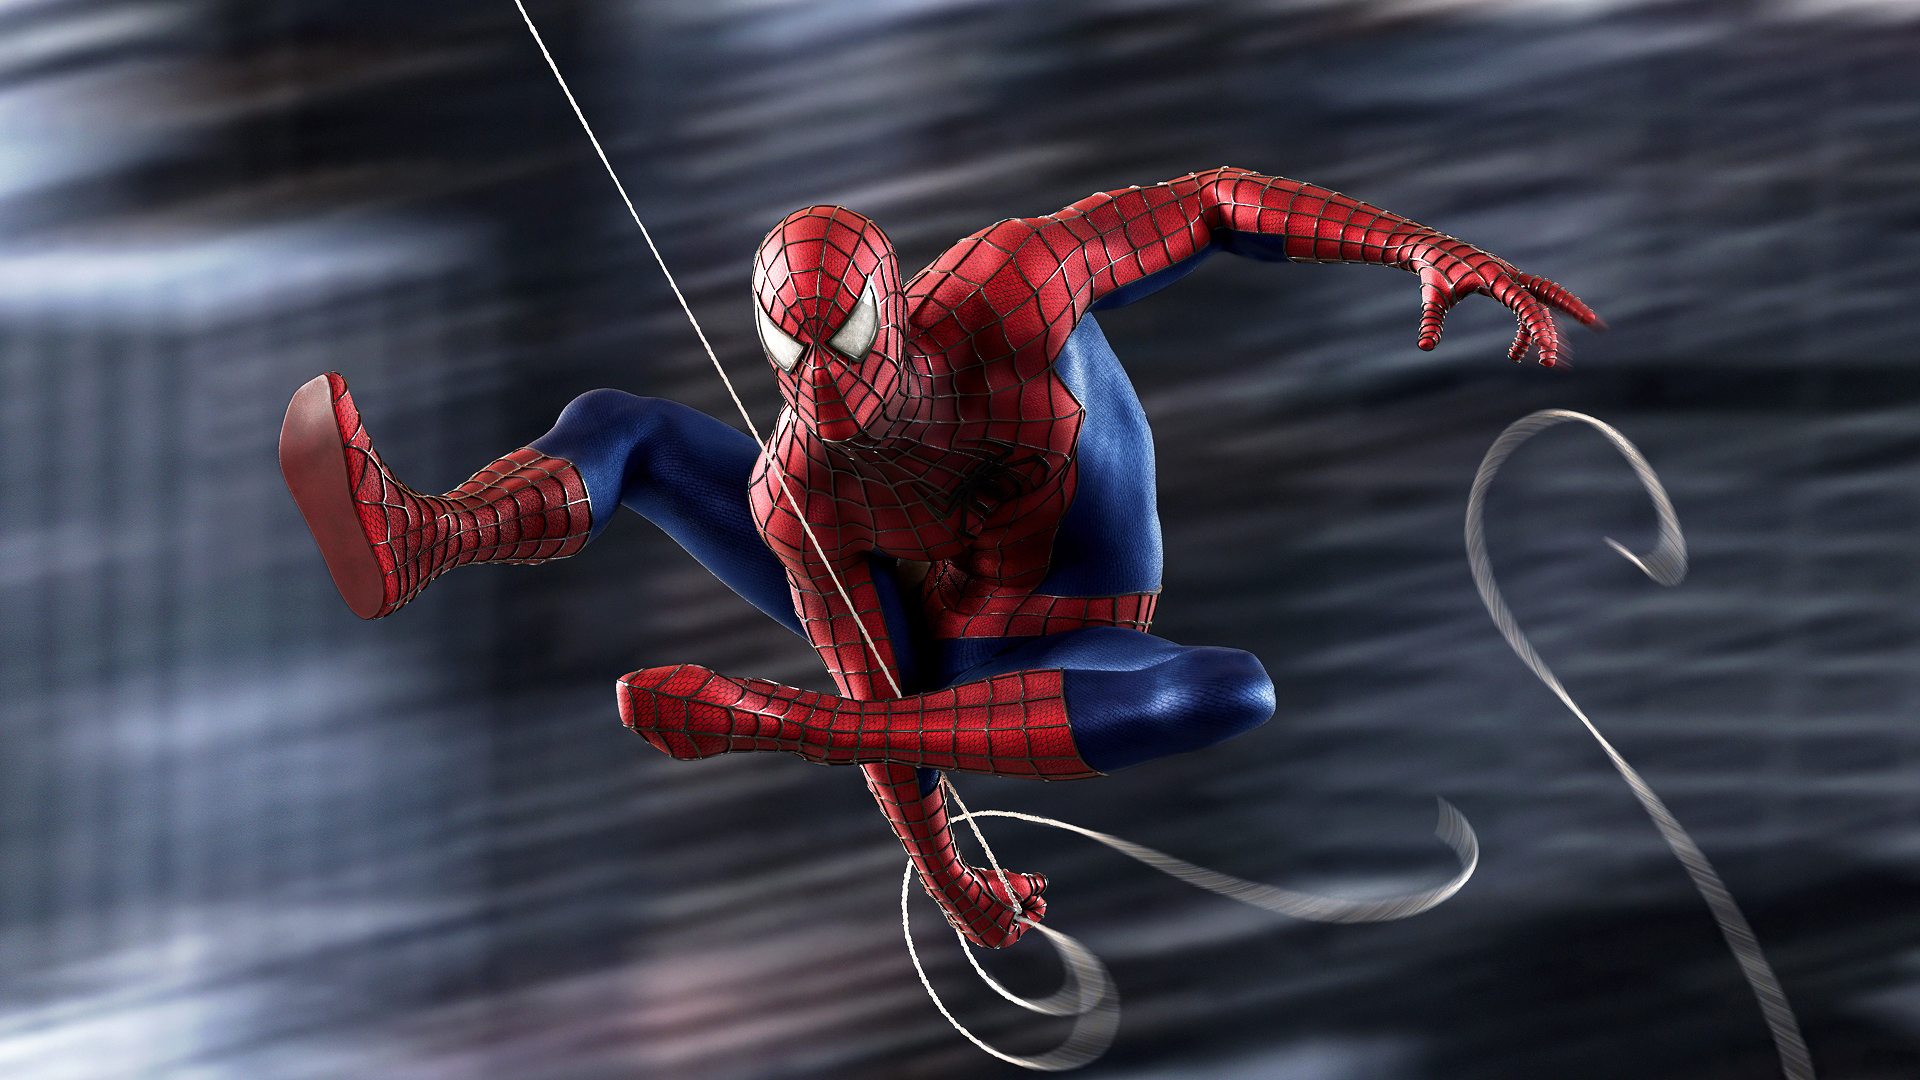 General 1920x1080 Spider-Man Remastered spiderwebs Marvel Comics superhero costumes digital art Spider-Man motion blur blurred bodysuit video games